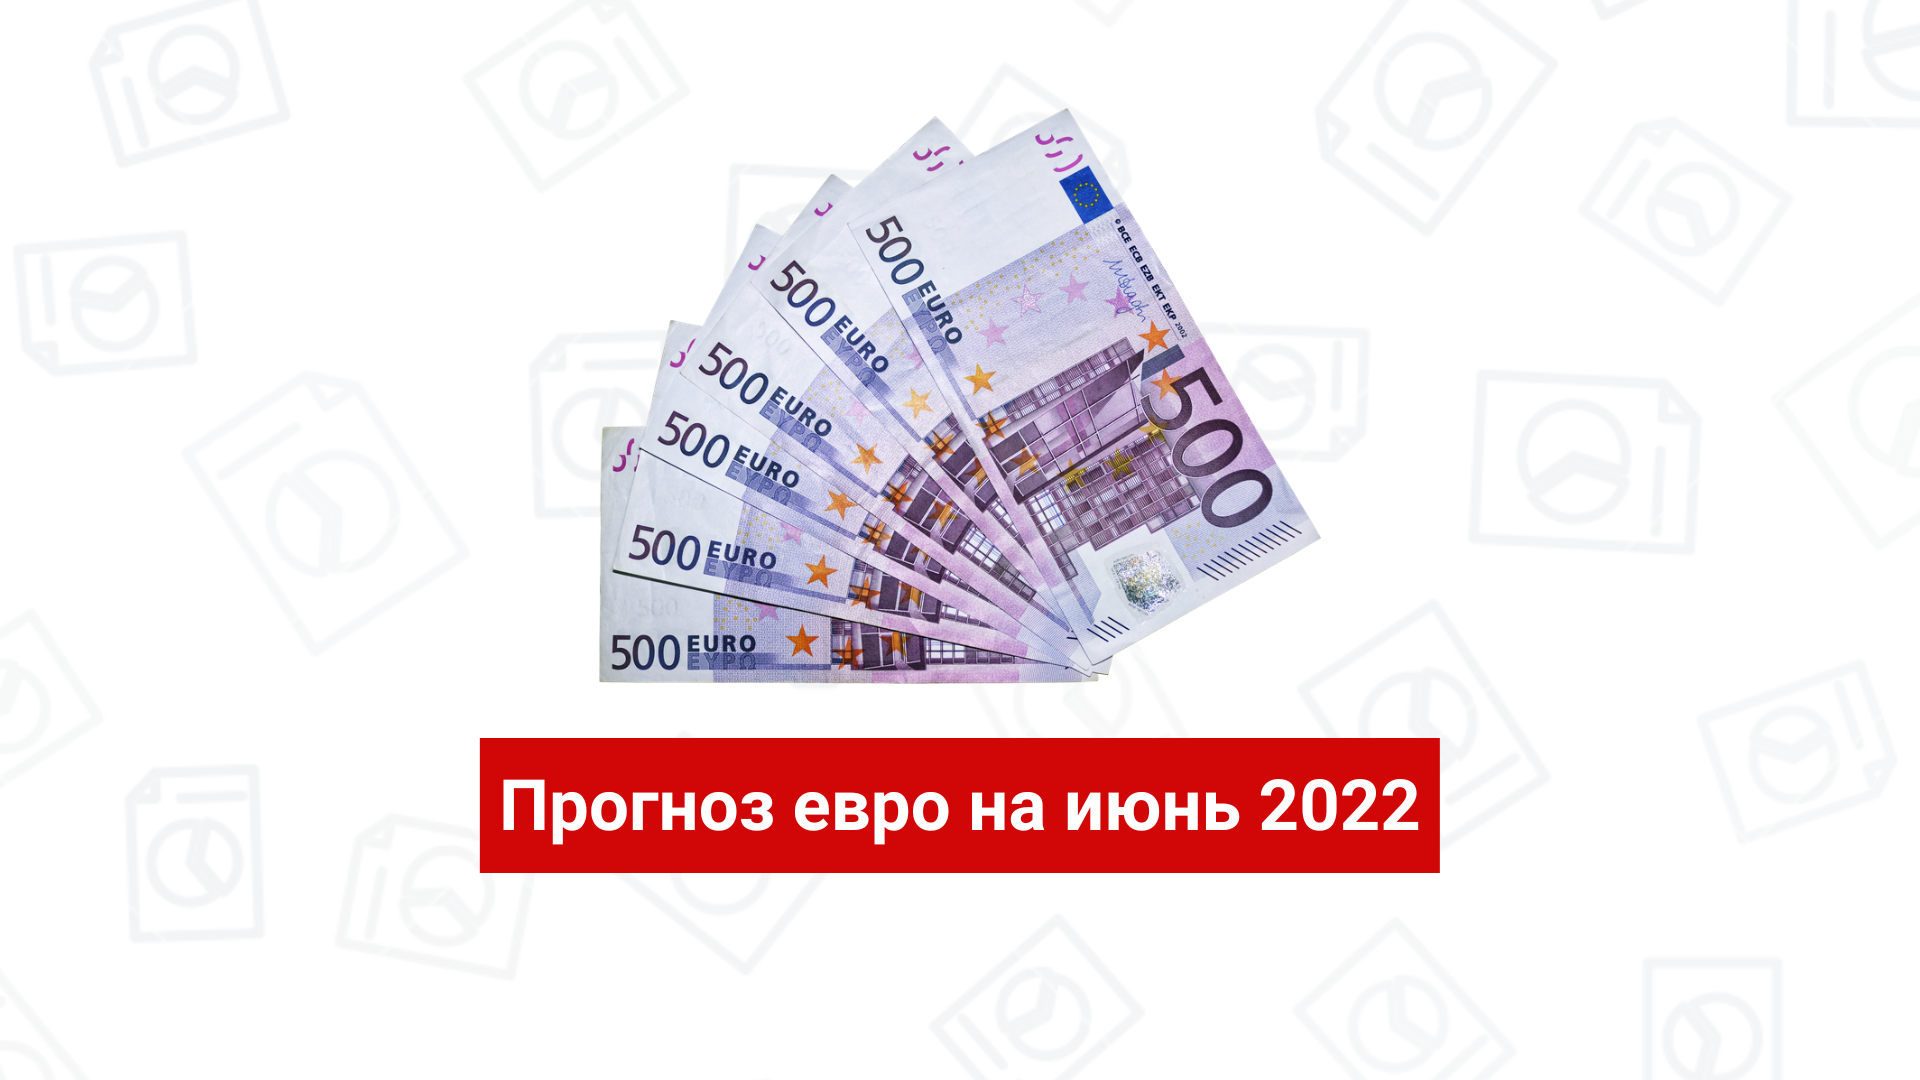 Прогноз евро на июнь 2022 года: мнение экспертов и таблица